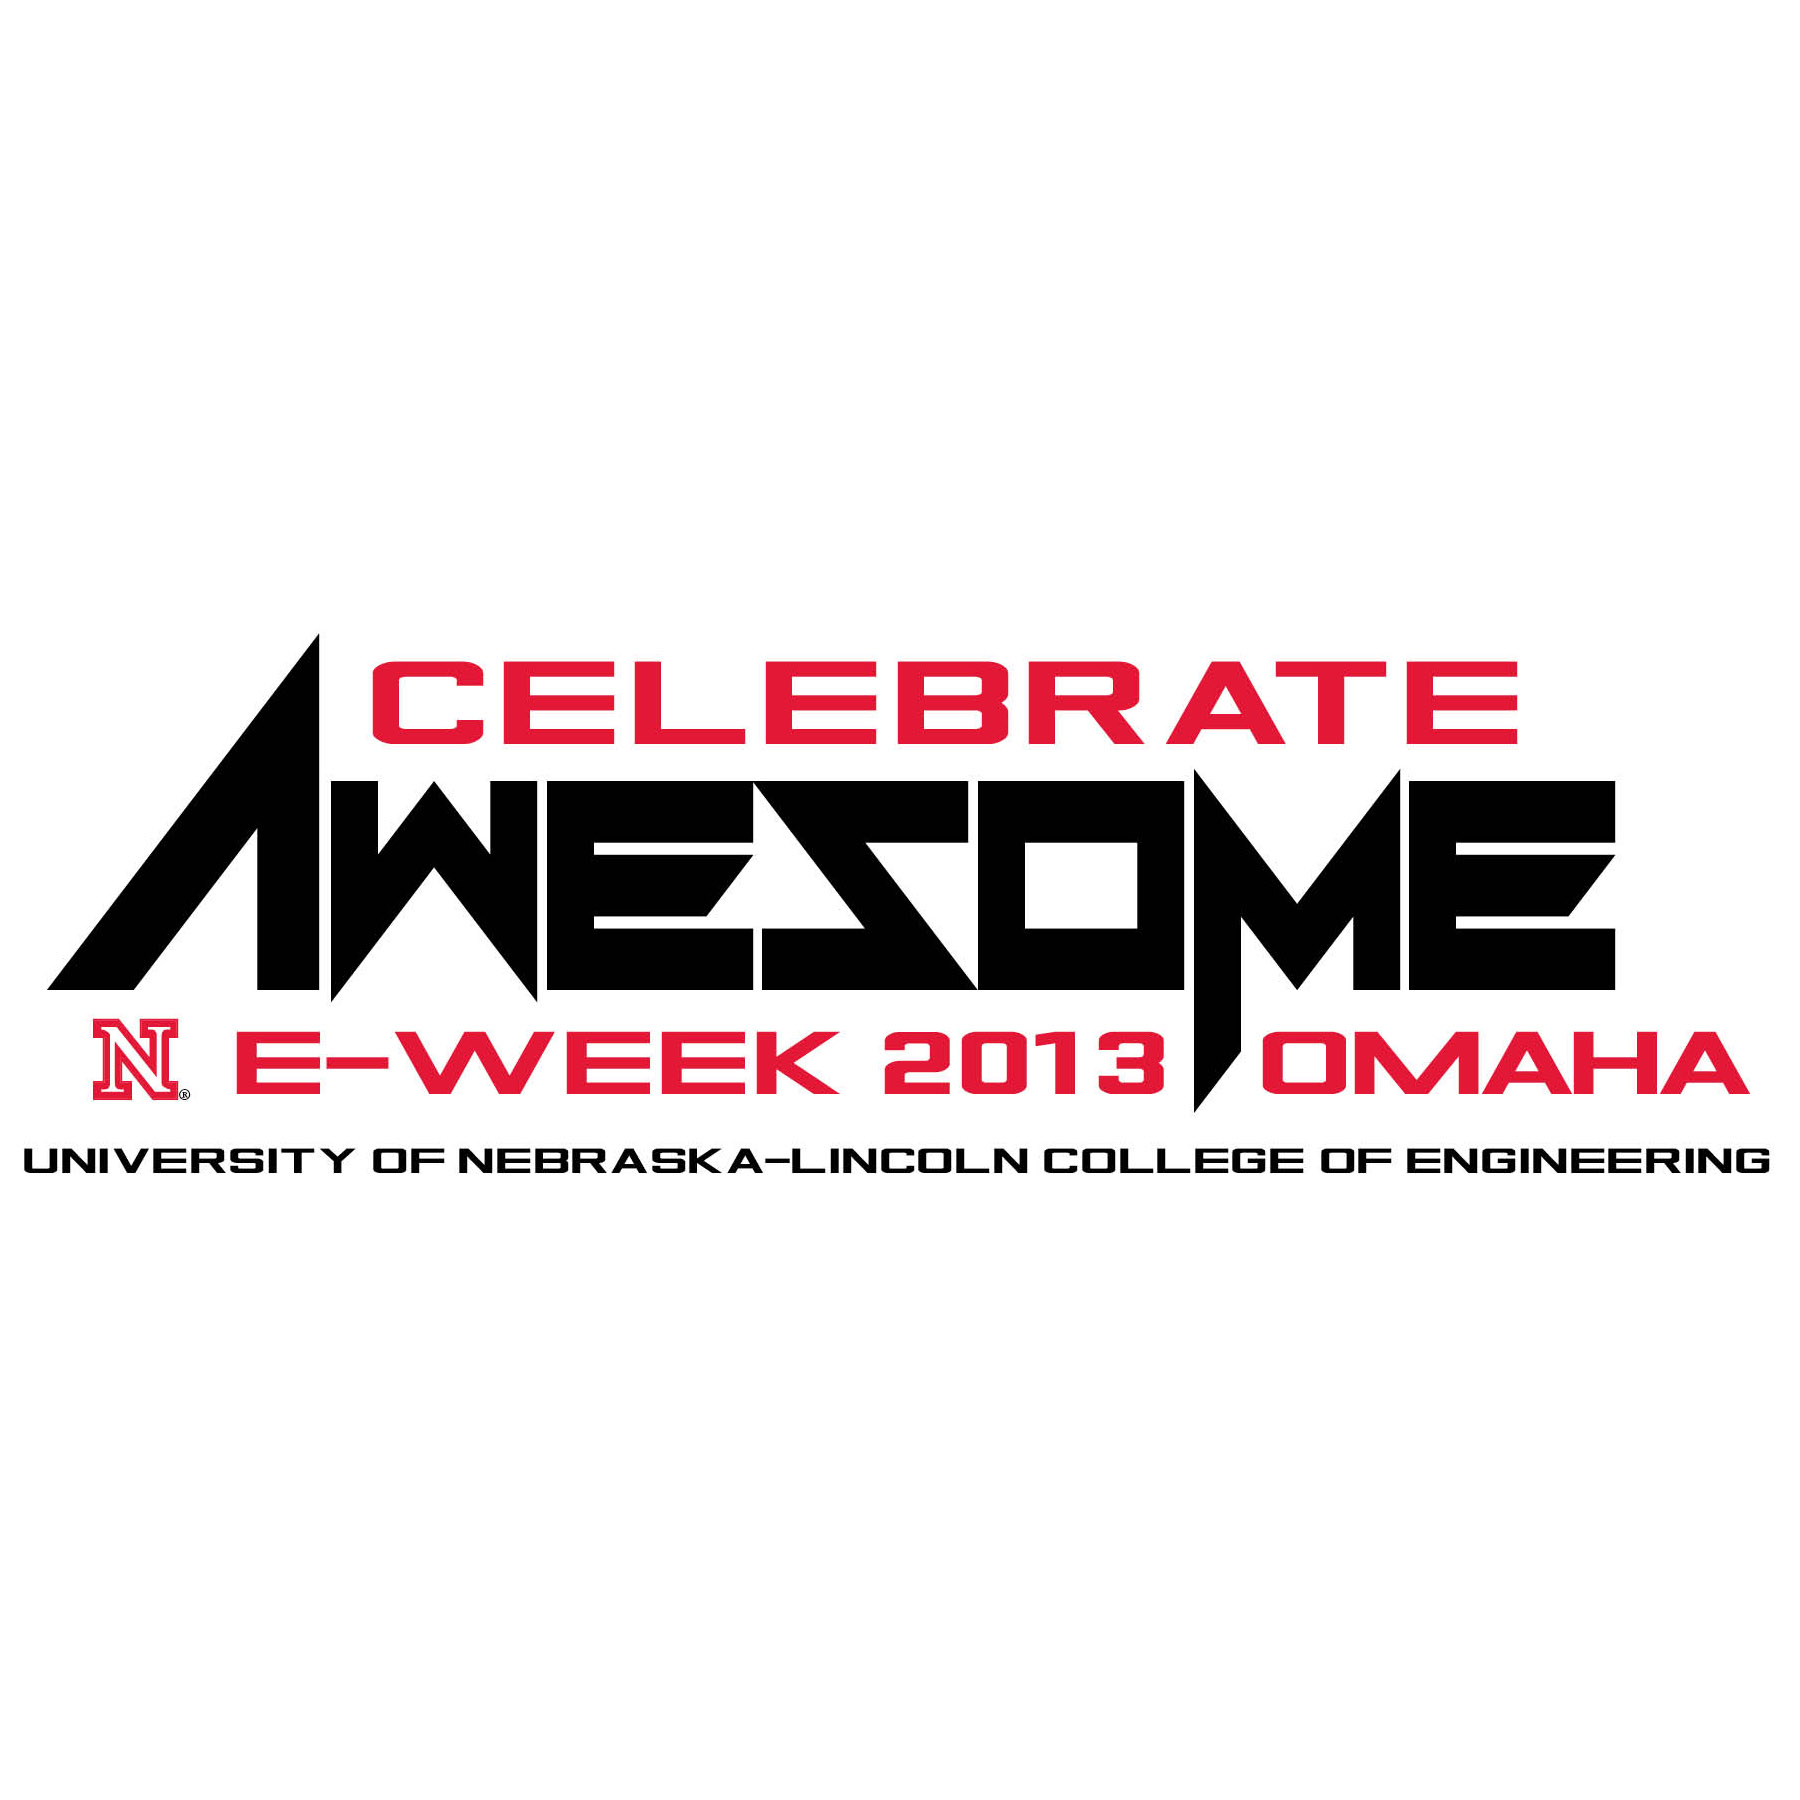 E-Week 2013 in Omaha